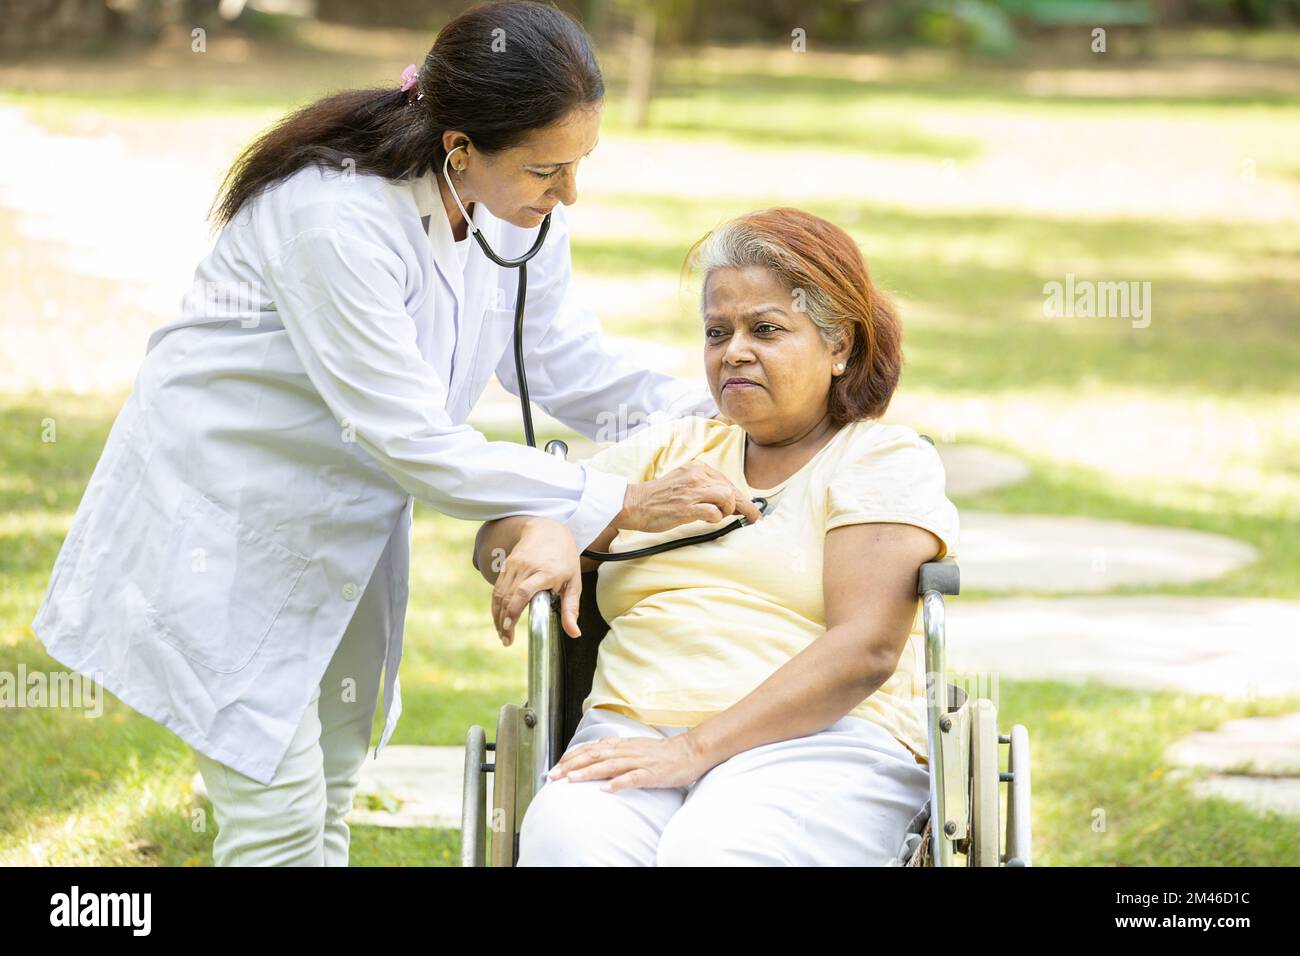 Il medico indiano controlla il battito cardiaco di una donna anziana in una sedia a rotelle all'aperto nel parco. Foto Stock